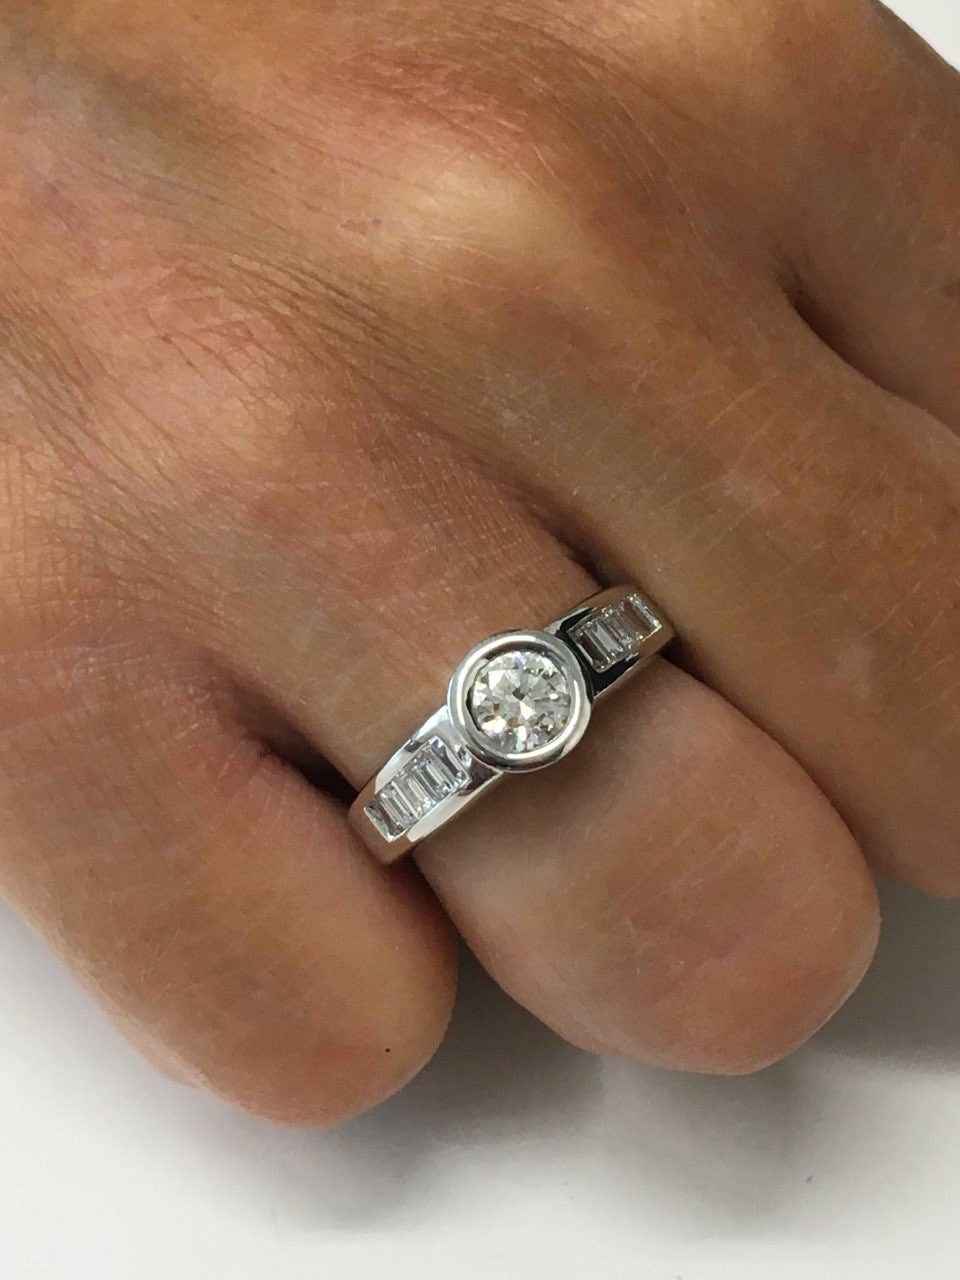 CLANDESTINO, anillo de compromiso en oro blanco - Roman Joyero